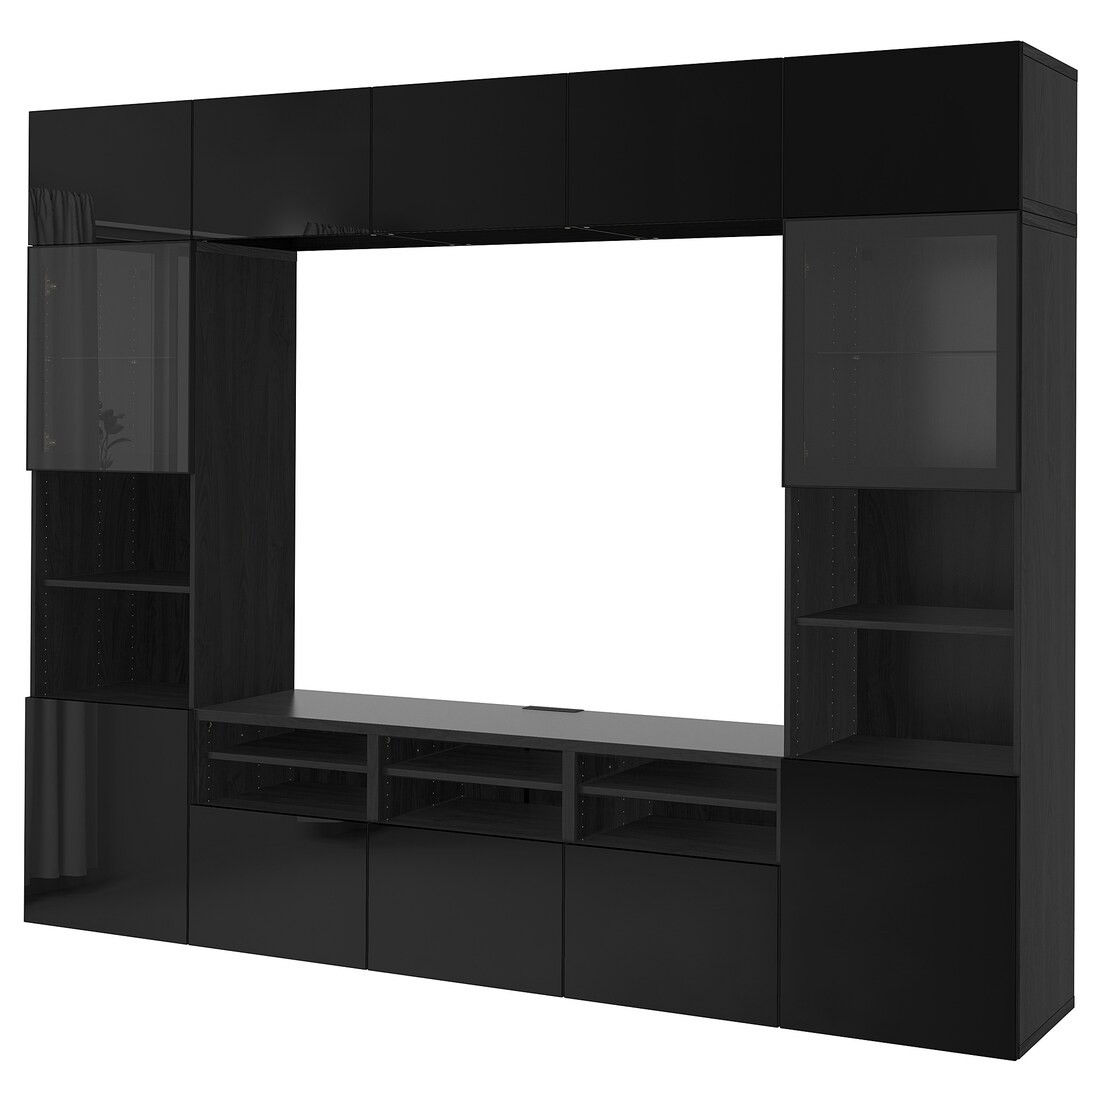 BESTÅ БЕСТО Комбинация для ТВ / стеклянные двери, черно-коричневый / Selsviken глянцевый / черное прозрачное стекло, 300x42x231 см